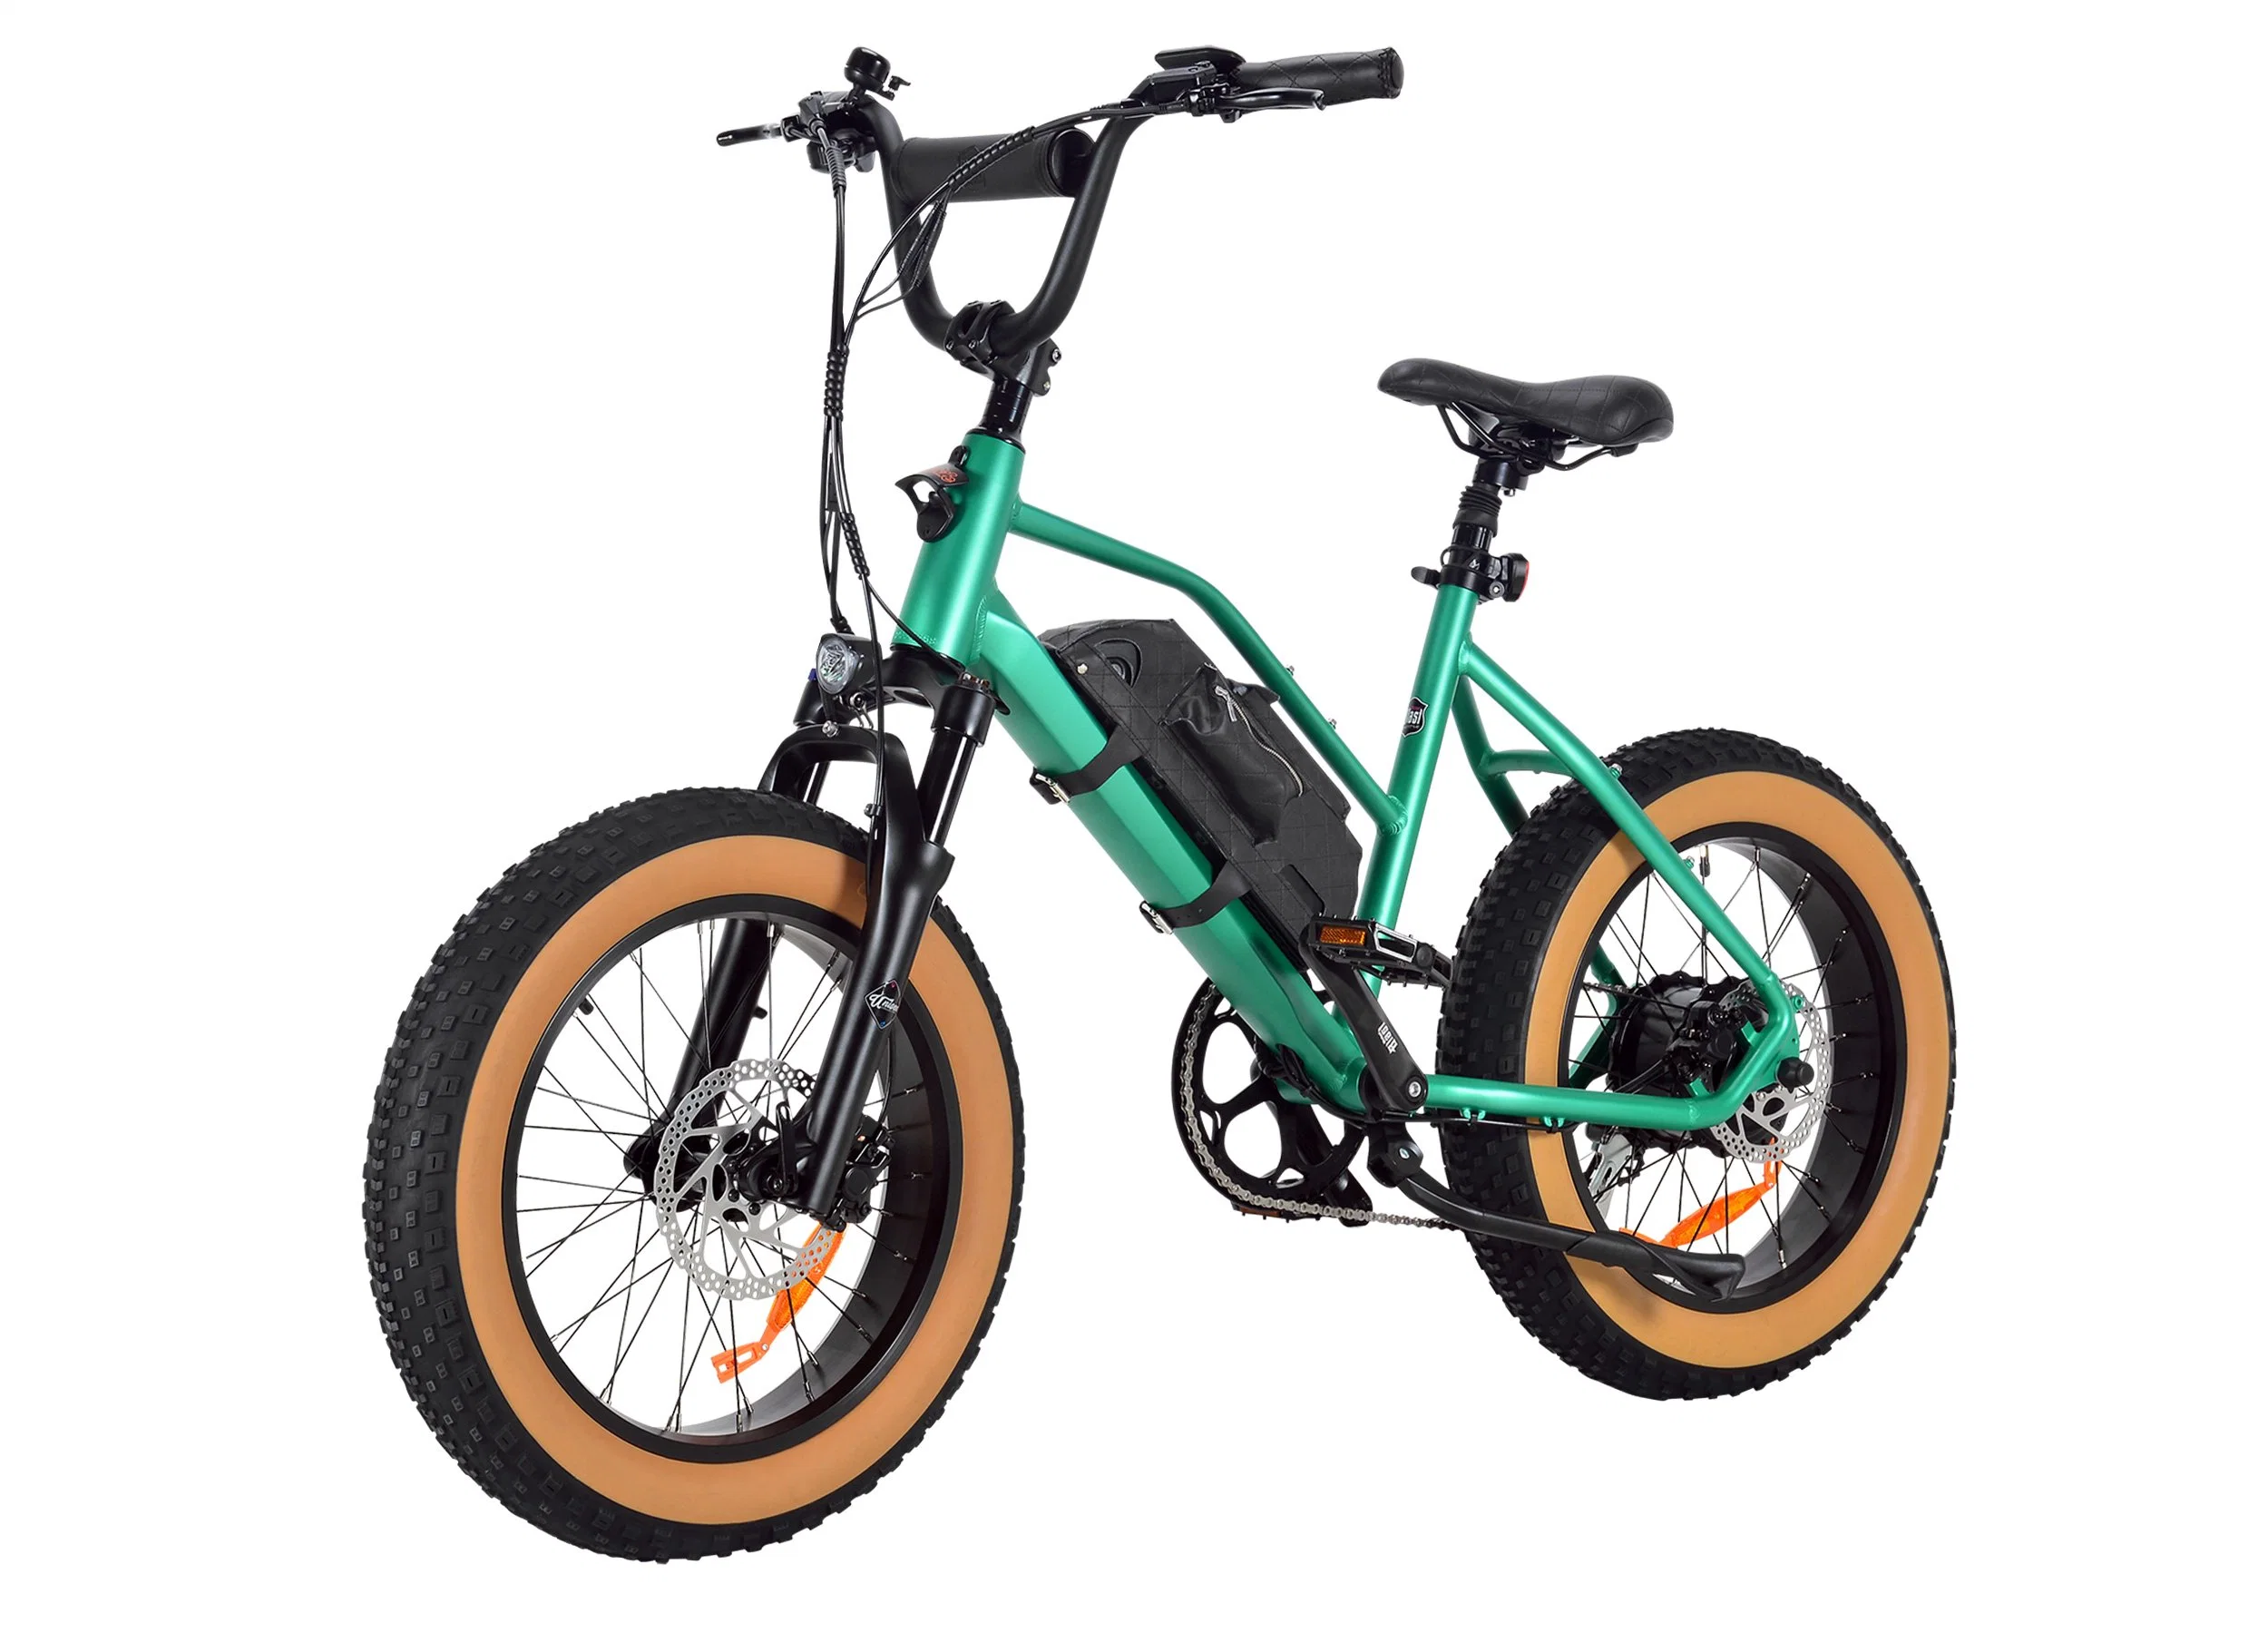 Neues Soda eBike für Cyclelove Unisize Dirt eBike entwickelt mit 350W 48V 13Ah Off Road Elektro-Fahrrad